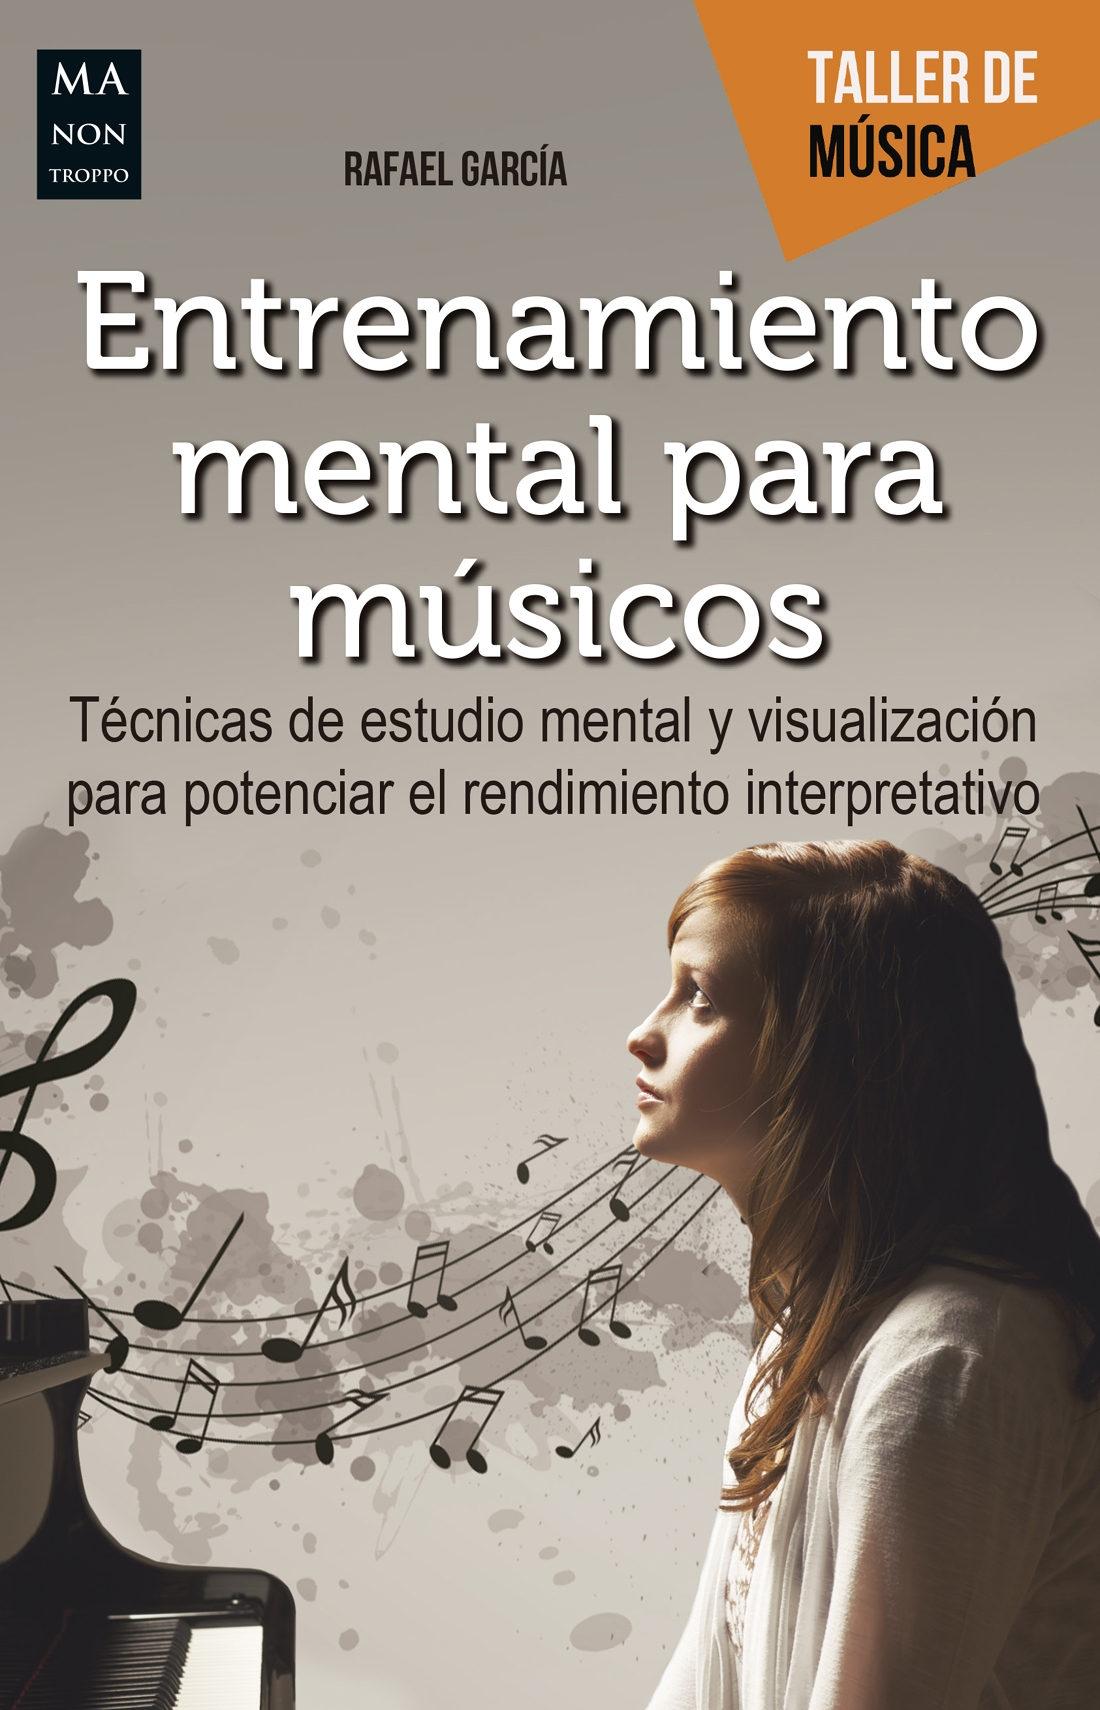 Entrenamiento mental para musicos "Técnicas de estudio mental y visualización para potenciar el rendimiento interpretativo". 